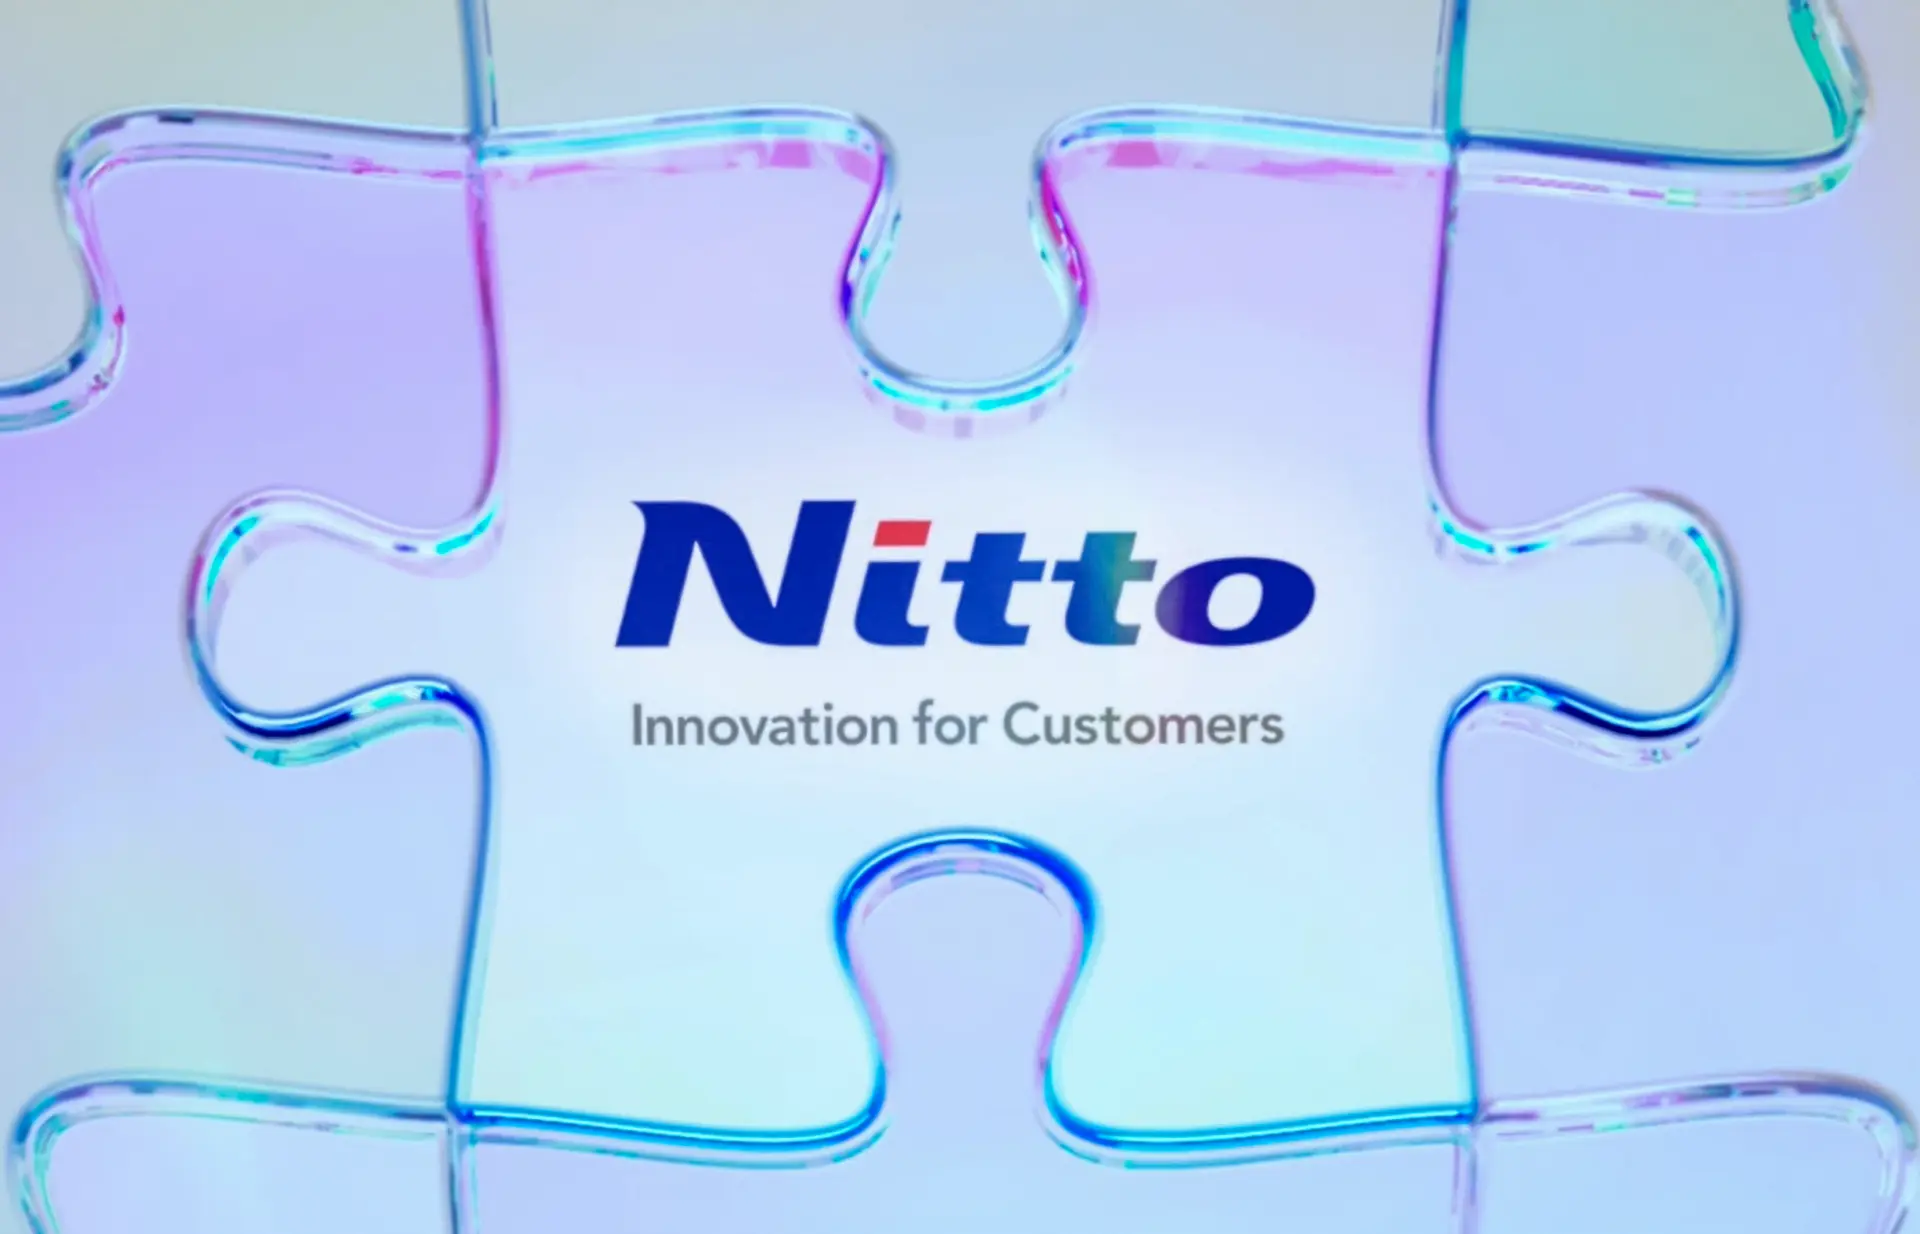 Plano de gestão de médio prazo "Nitto for Everyone 2025"